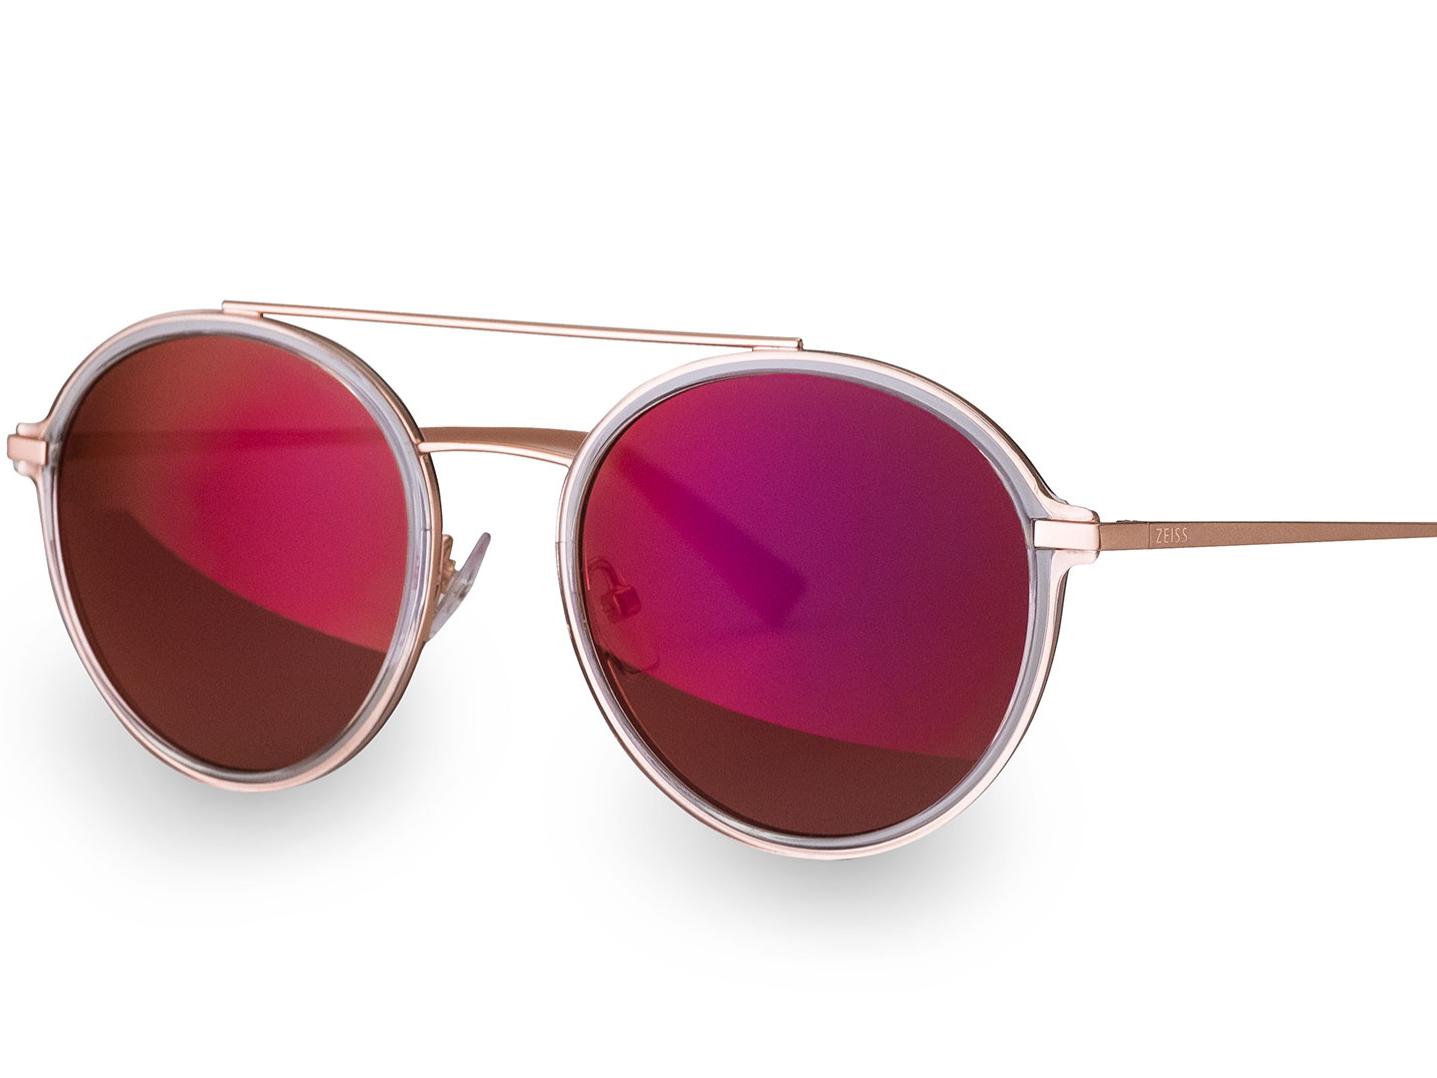 Zdjęcie modnych okularów przeciwsłonecznych ze specjalną powłoką przedniej soczewki ZEISS w kolorze magenta 